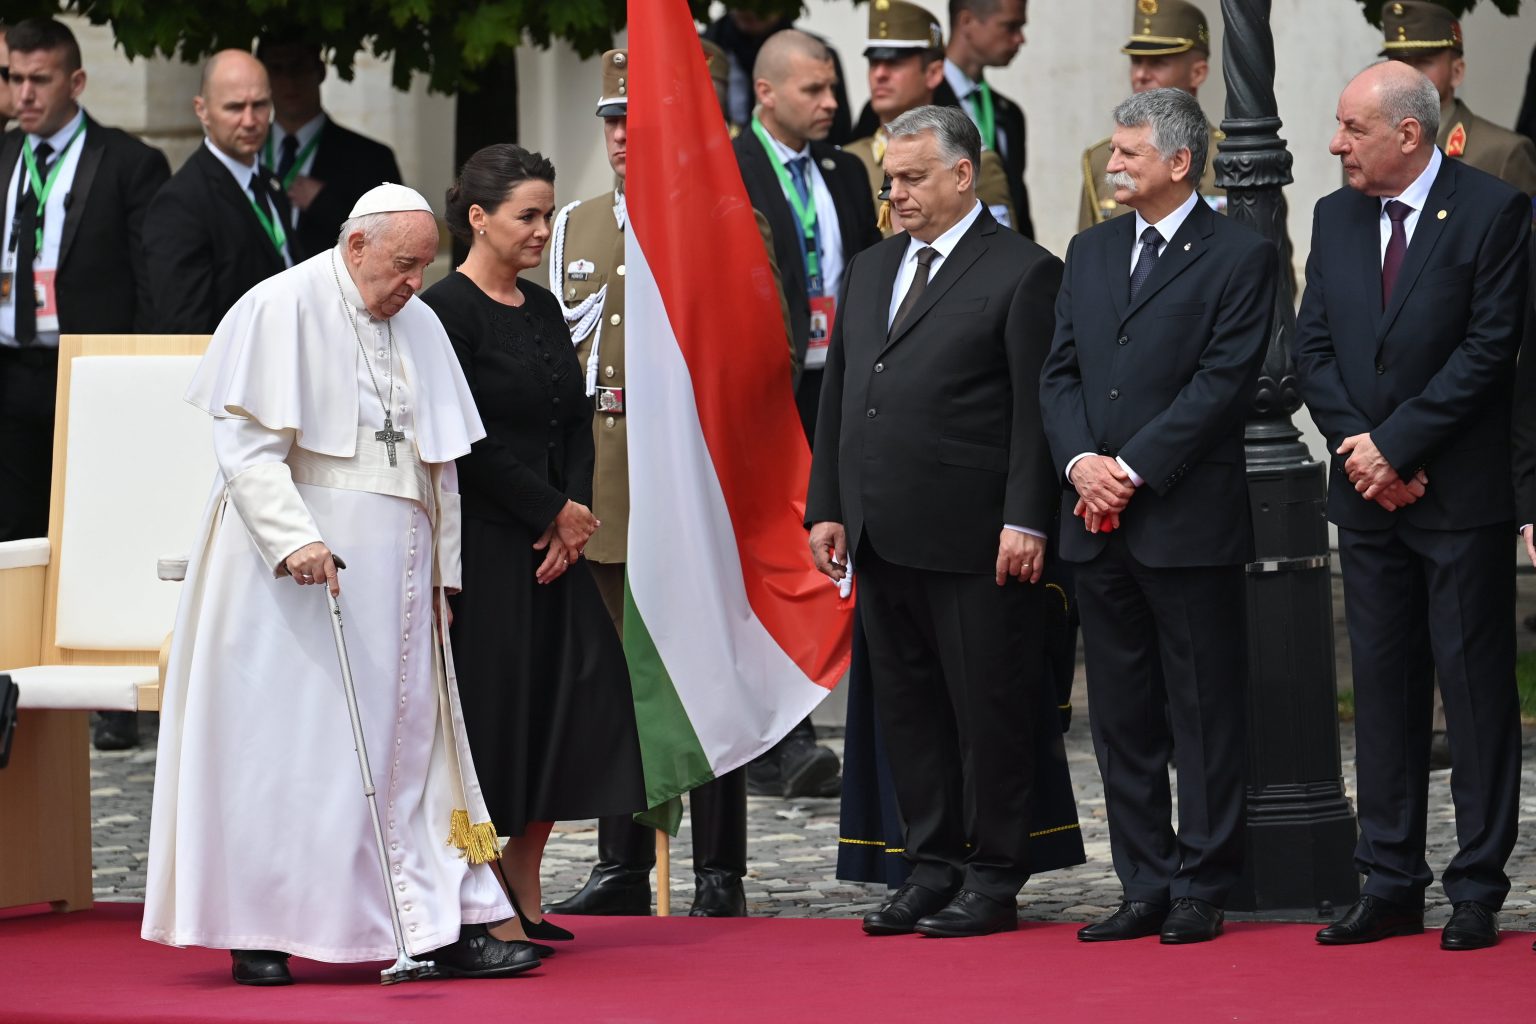 Papst Franziskus führte persönliche Gespräche mit ungarischen Spitzenpolitikern